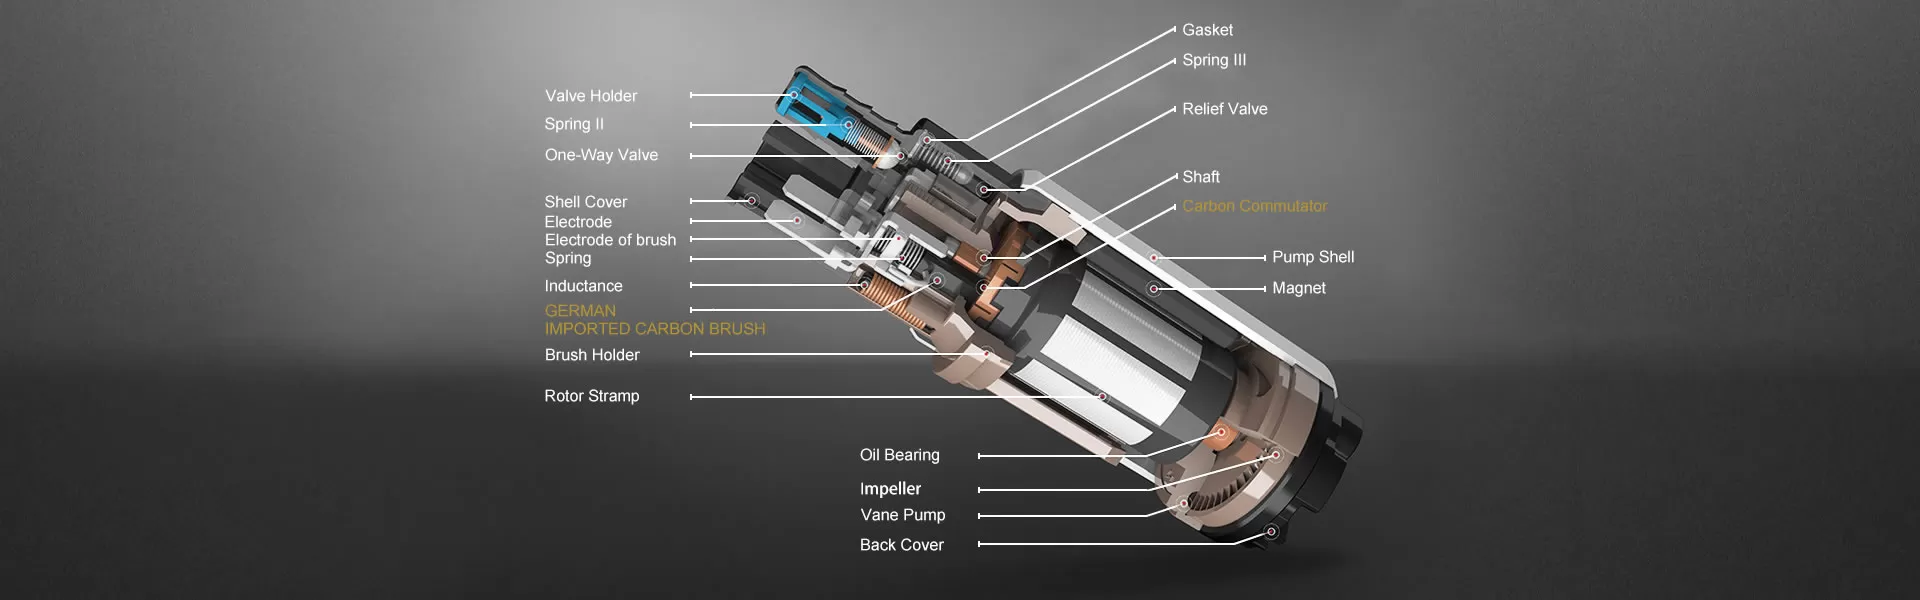 OSIAS 340LPH E85 Compatible High Flow Fuel Pump Replaces Walbro GSS342